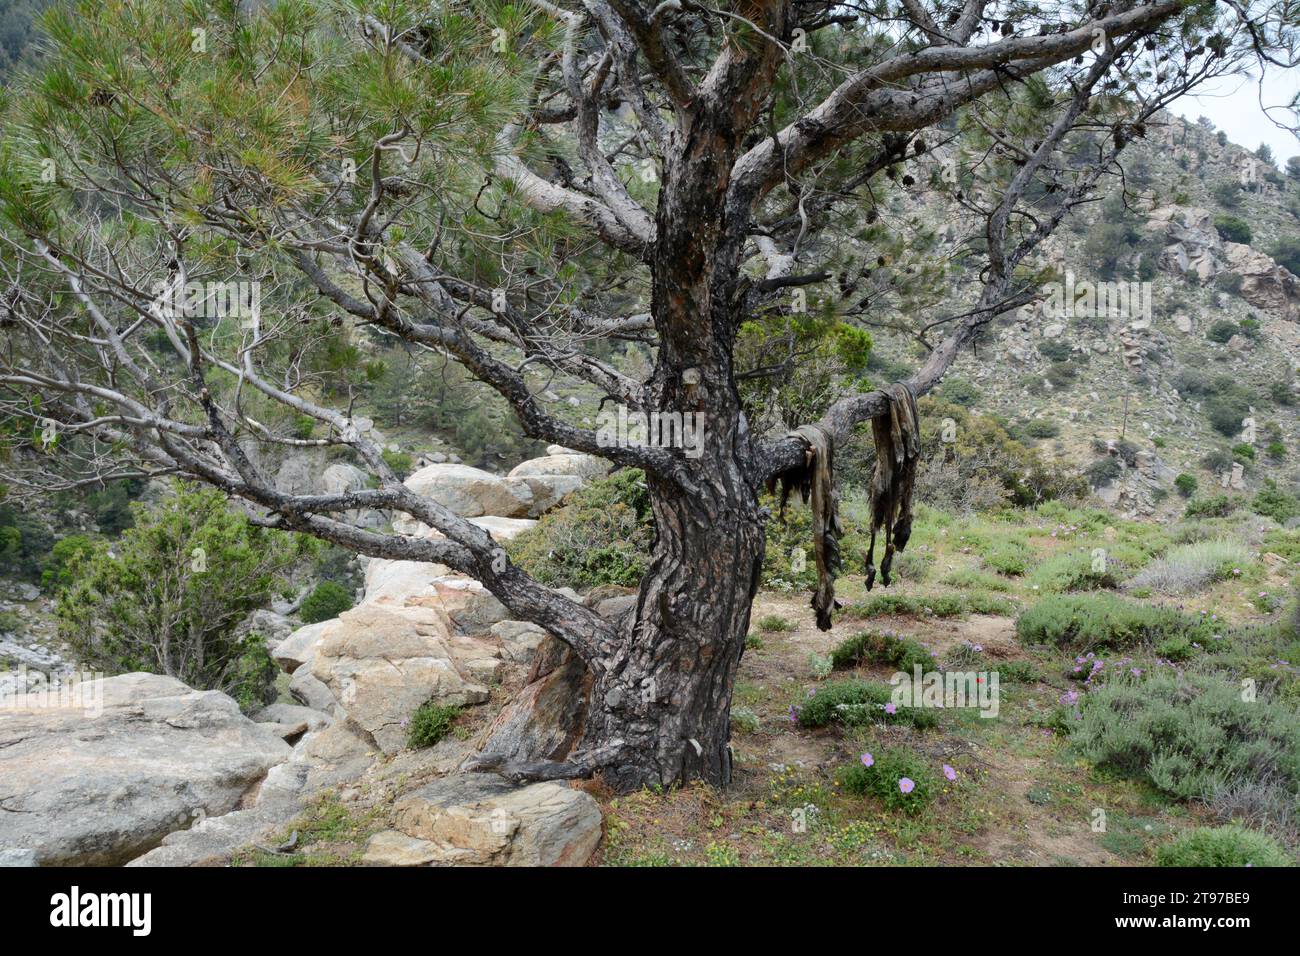 Un paio di pelli di capra o pelli di capra si asciugano su un albero nelle montagne sopra il villaggio di NAS, sull'isola greca di Ikaria, in Grecia. Foto Stock